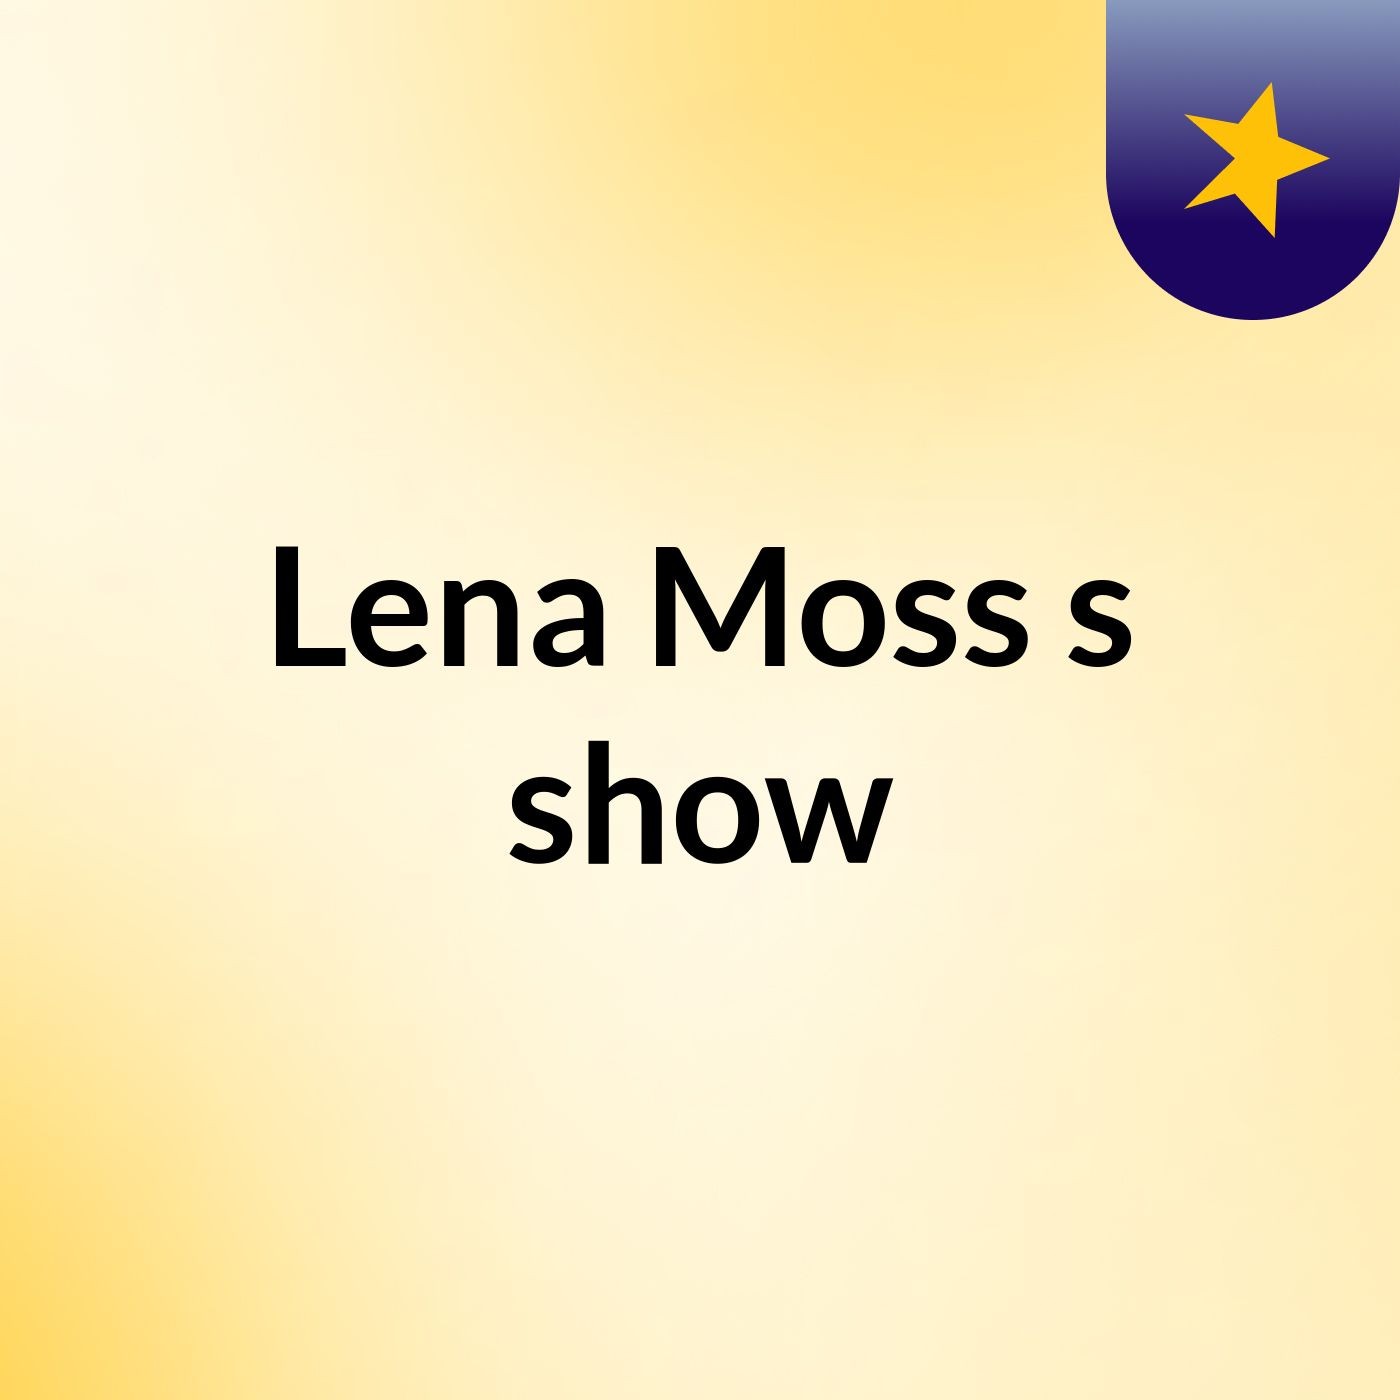 Lena Moss's show